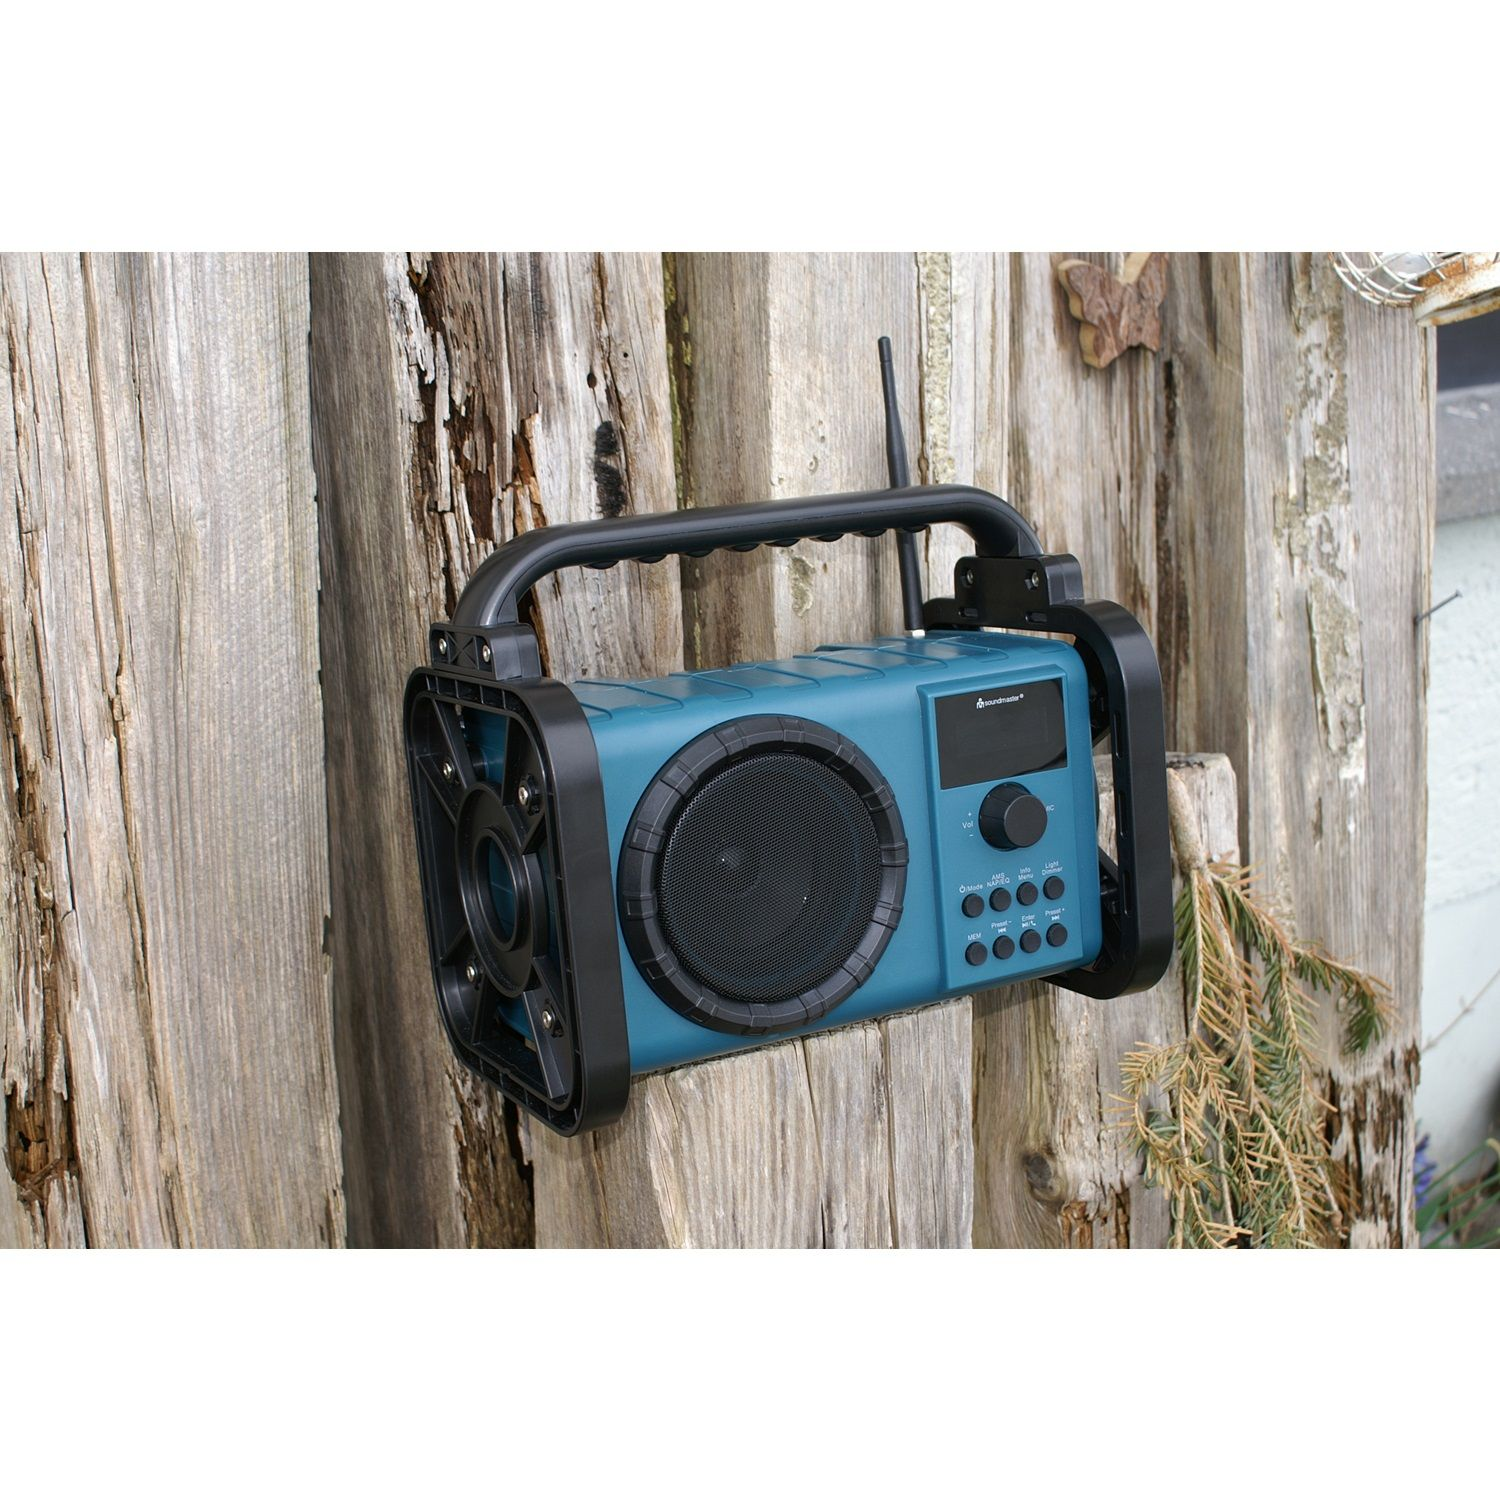 SOUNDMASTER DAB80 Multifunktionsradio, DAB+, FM, blau Bluetooth, FM, DAB+, AM, DAB